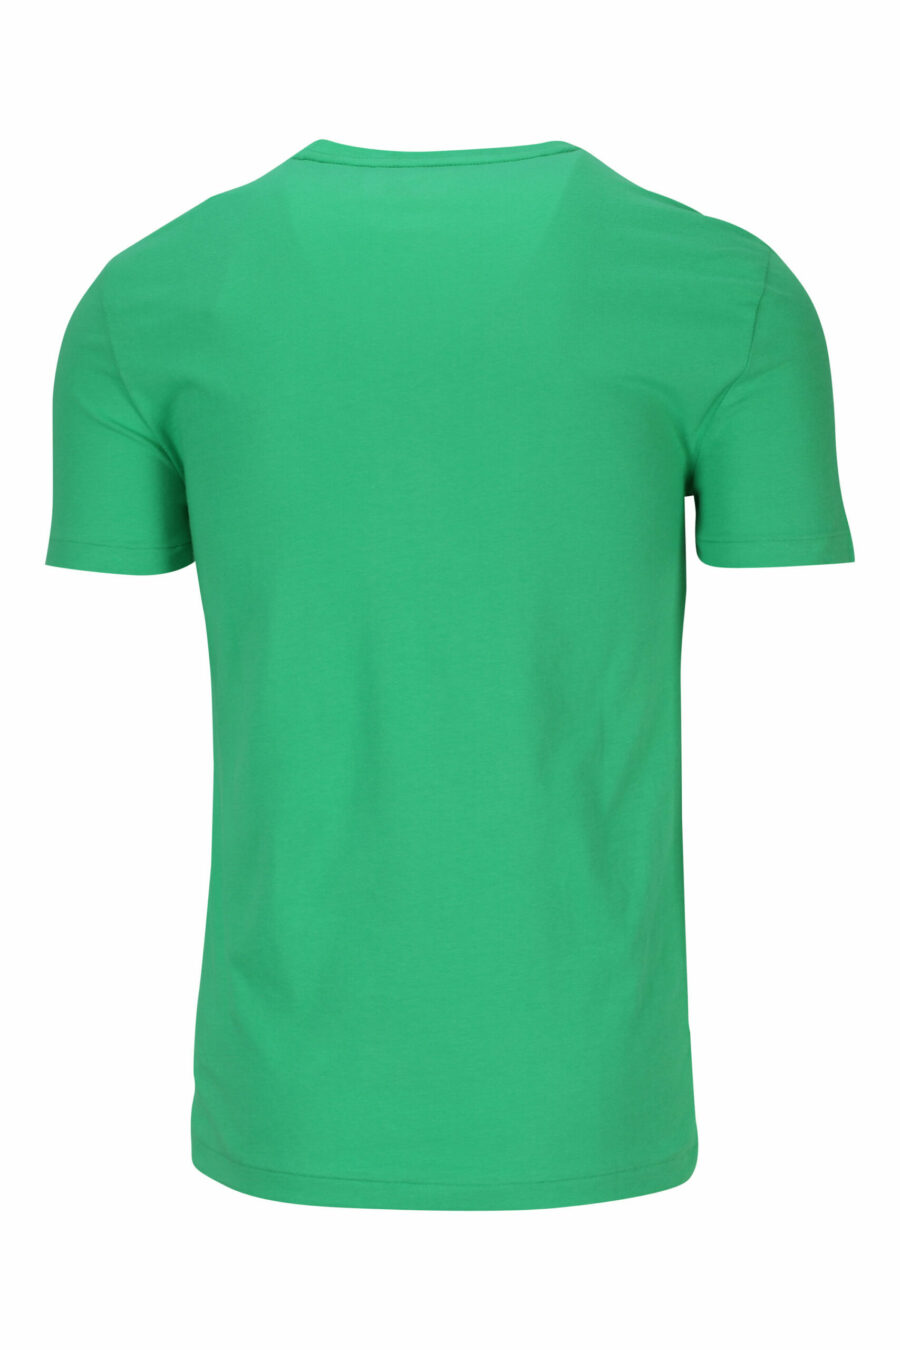 Grünes und gelbes T-Shirt mit Mini-Logo "Polo" - 3616535653825 1 skaliert